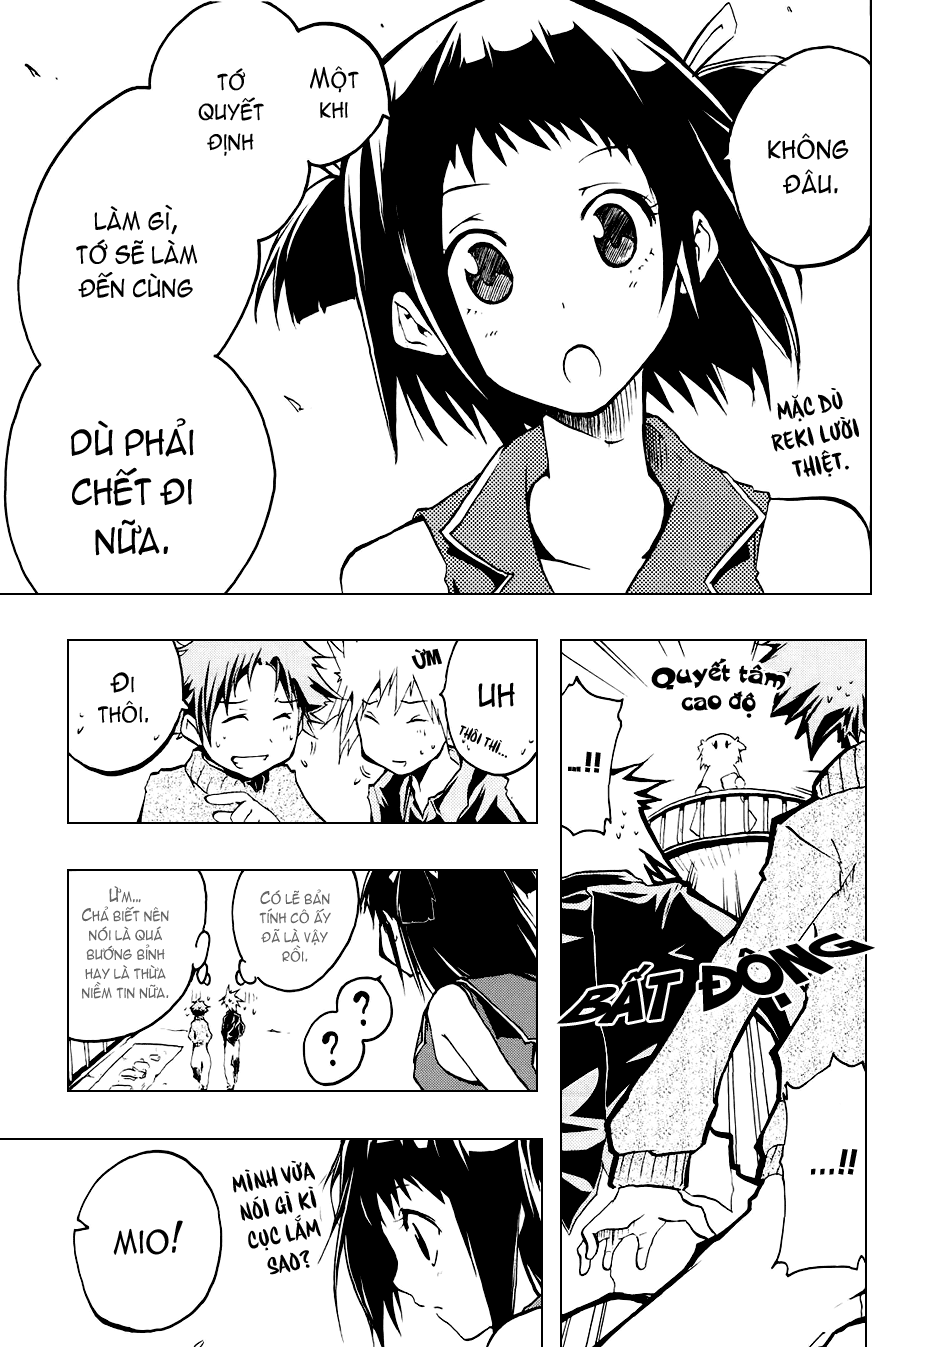 [Manga]: Esprit 0011